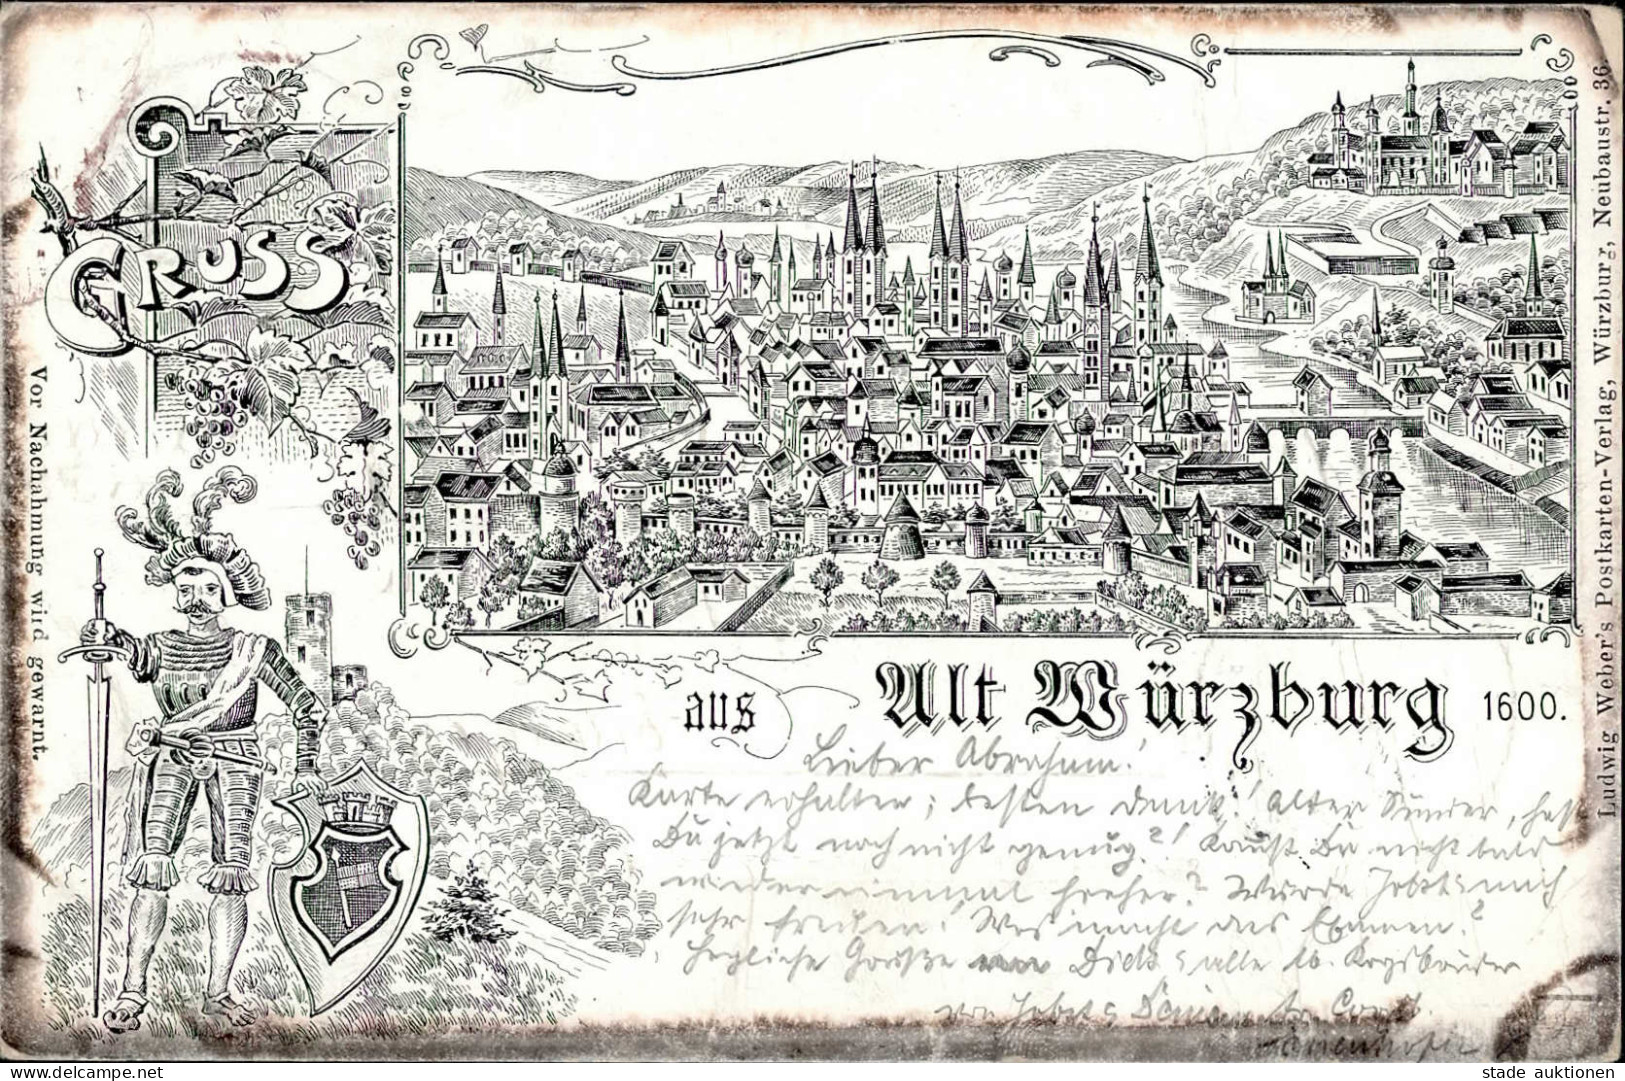 Würzburg (8700) 1898 II (kleine Stauchung) - Wuerzburg